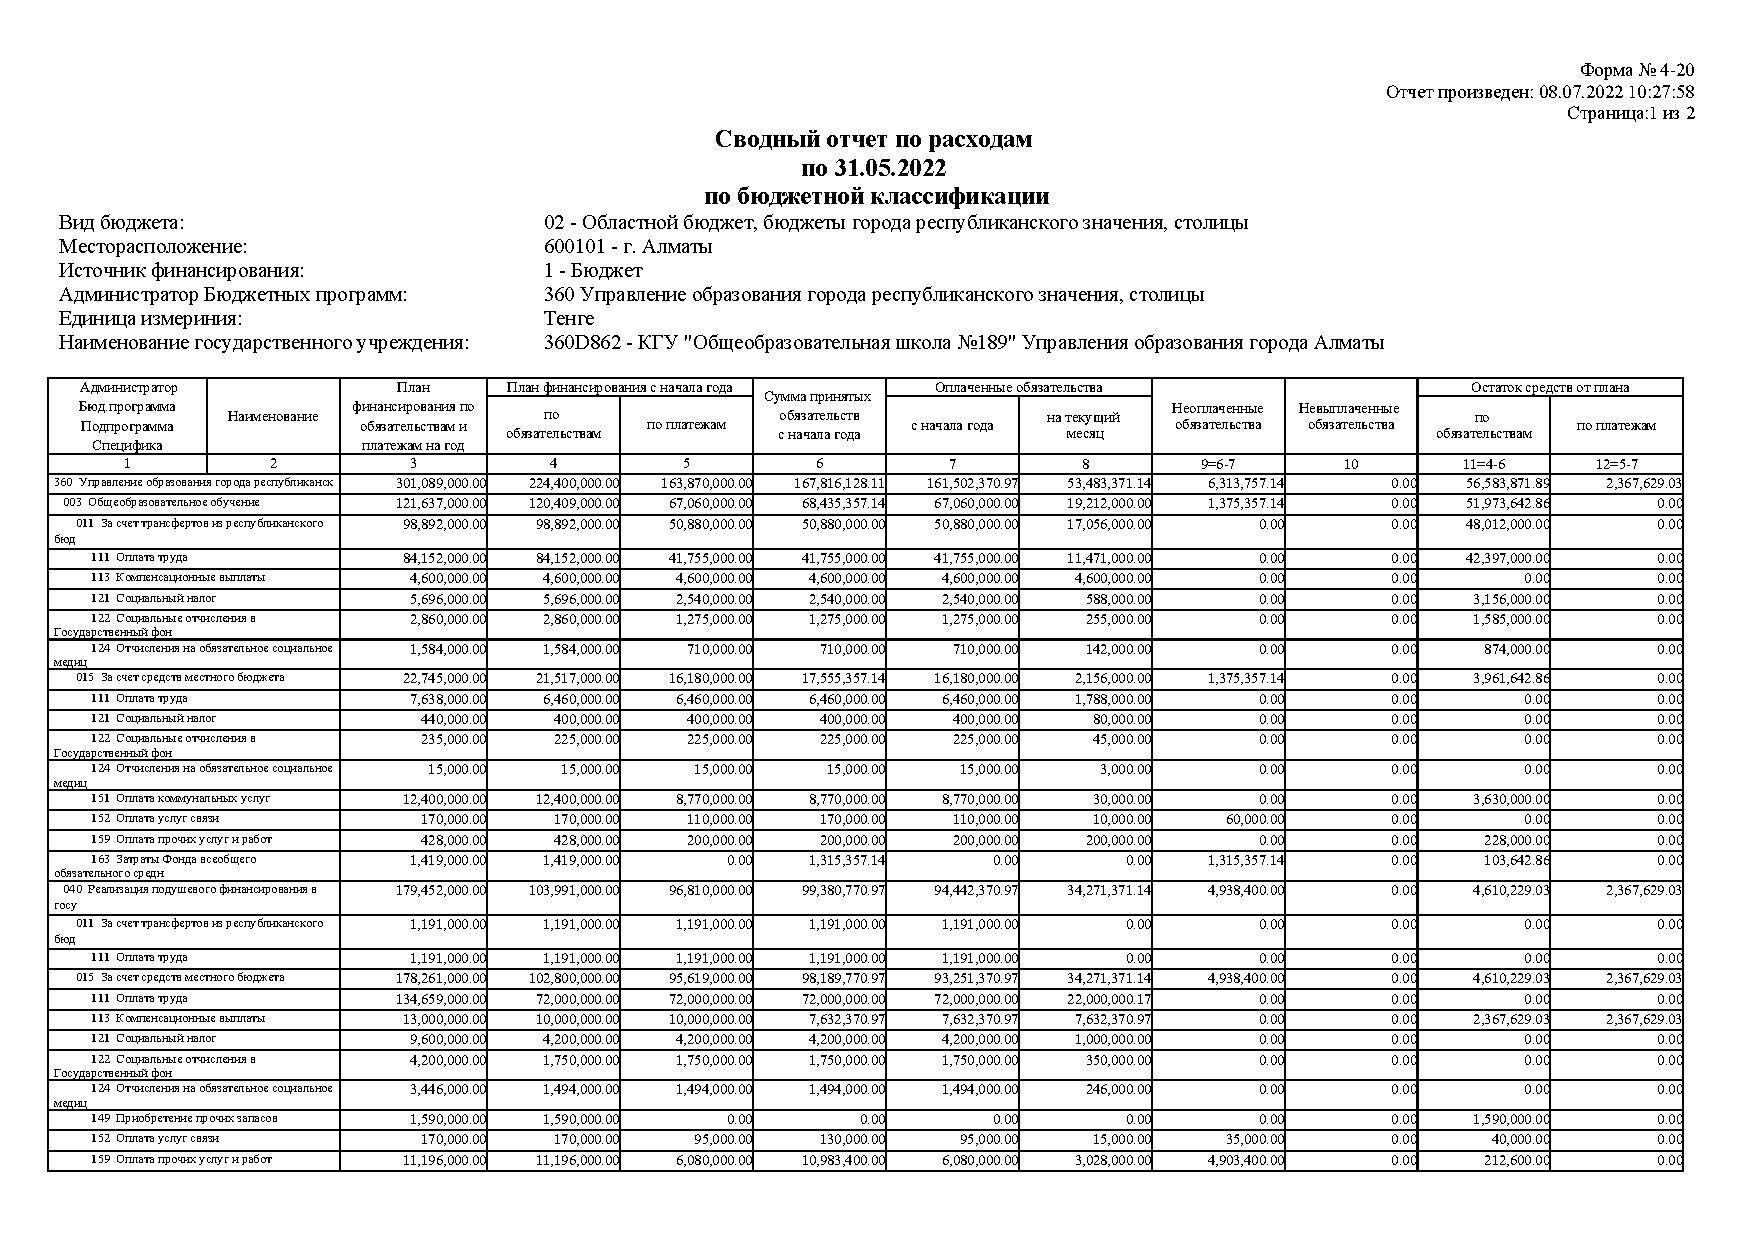 Сводный отчет по расходам на 31.05.2022